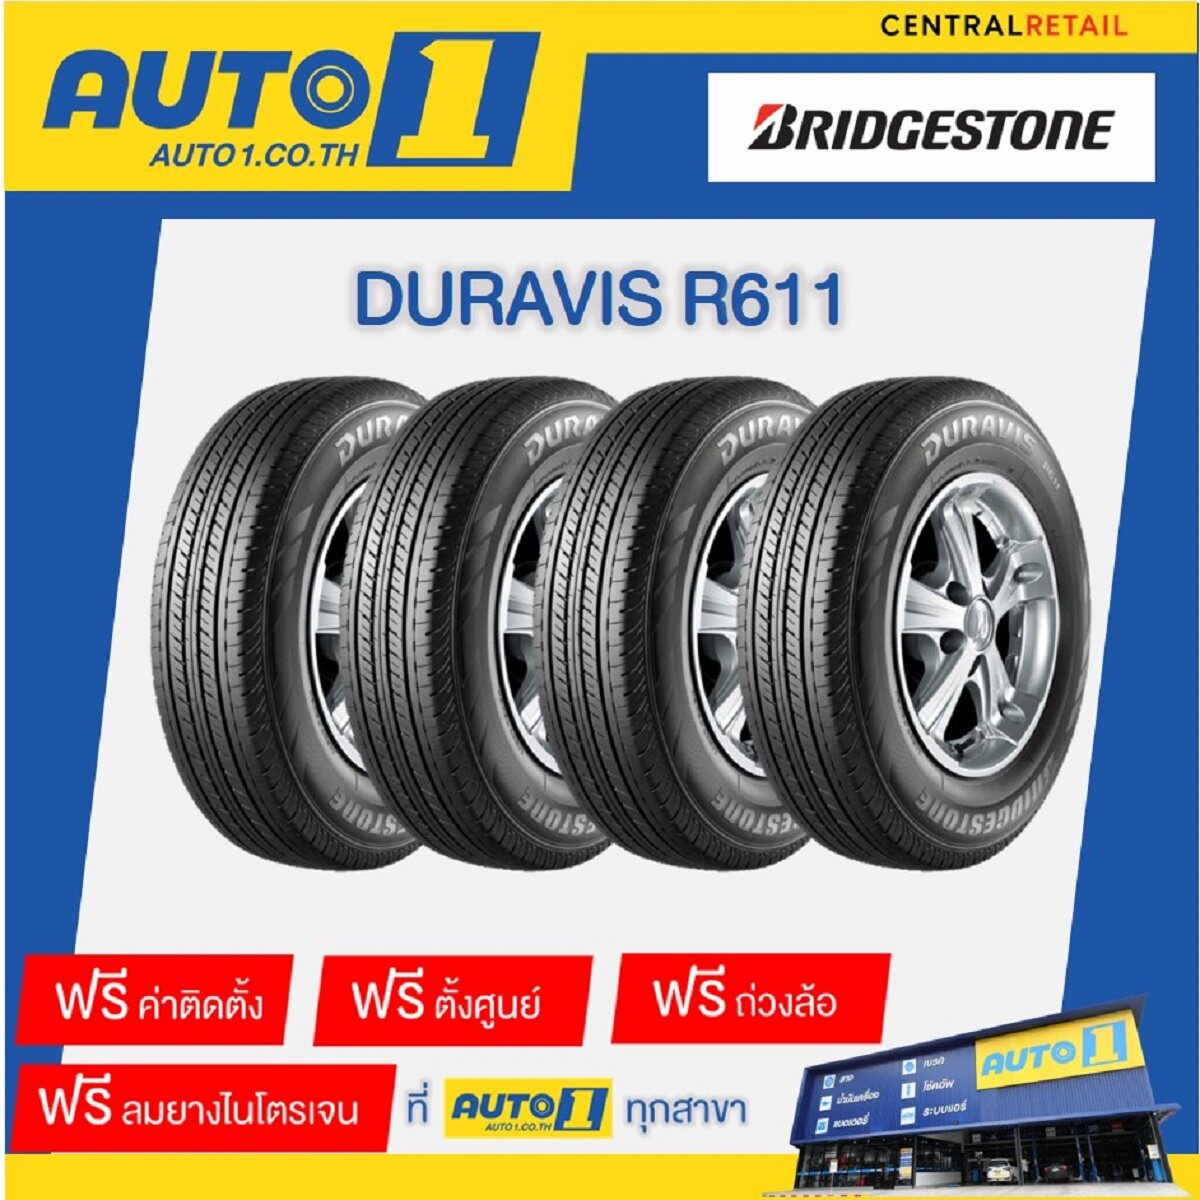 ยางรถยนต์ 215/70R16 Bridgestone Duravis R611บริดจสโตน (รถกระบะSUV ขอบ16  จำนวน 4 เส้น พร้อมติดตั้งยางที่ศูนย์บริการออโต้วัน)